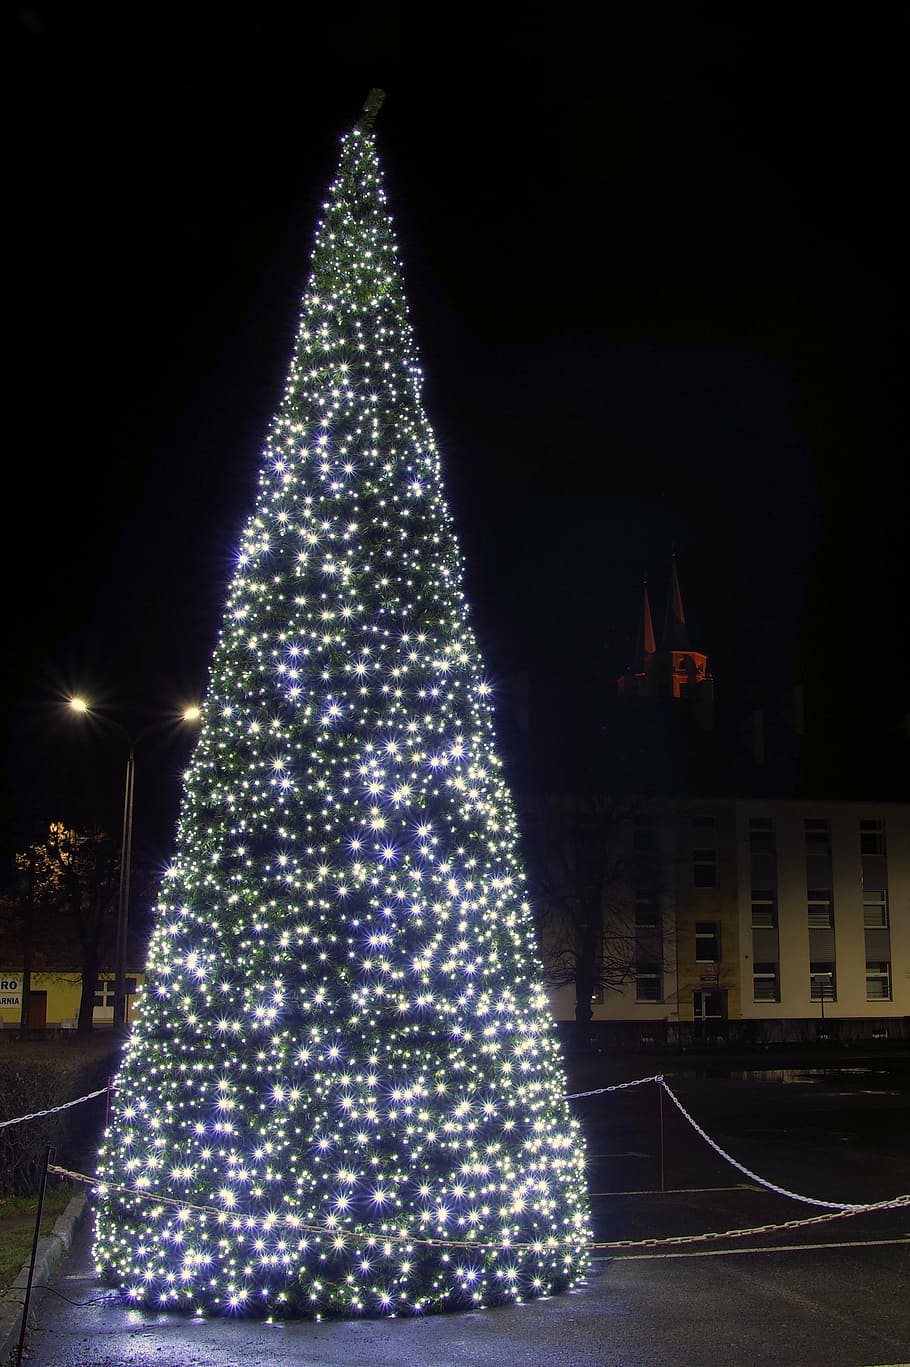 pohon natal, lampu, bintang, dekorasi natal, natal, hiasan natal, lampu pohon natal, tradisi, malam, alang-alang